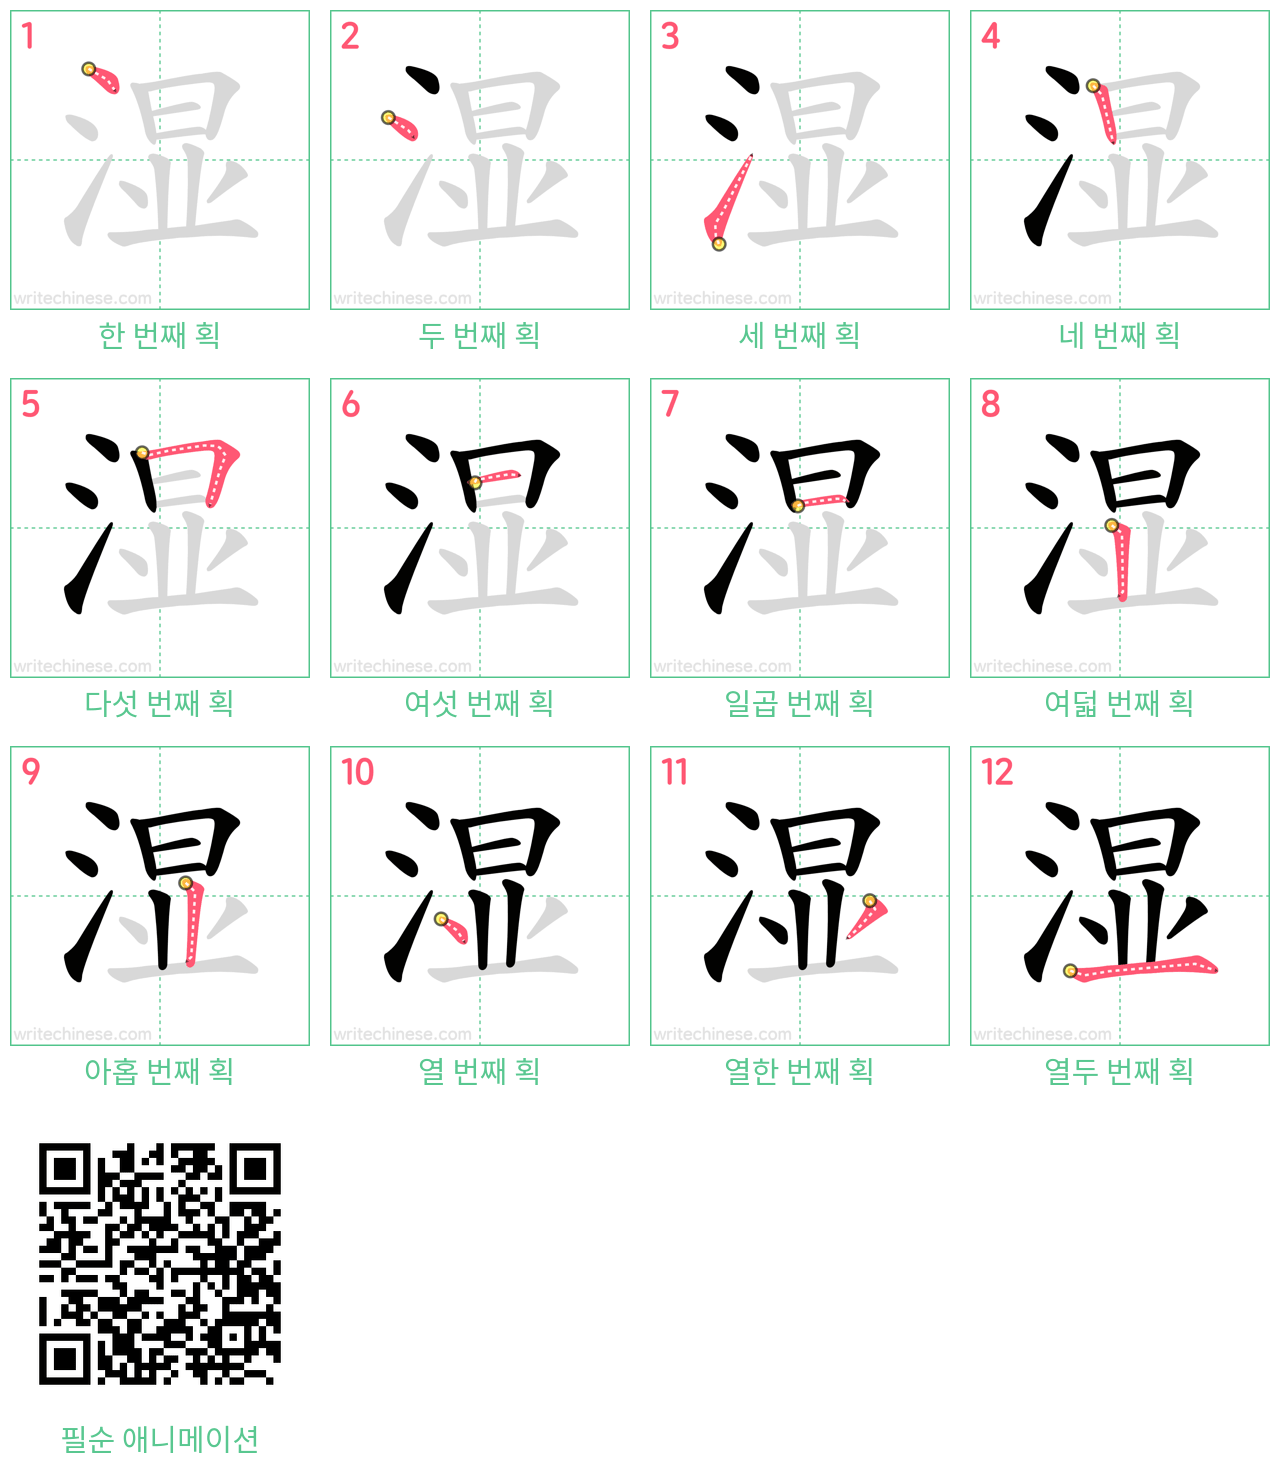 湿 step-by-step stroke order diagrams